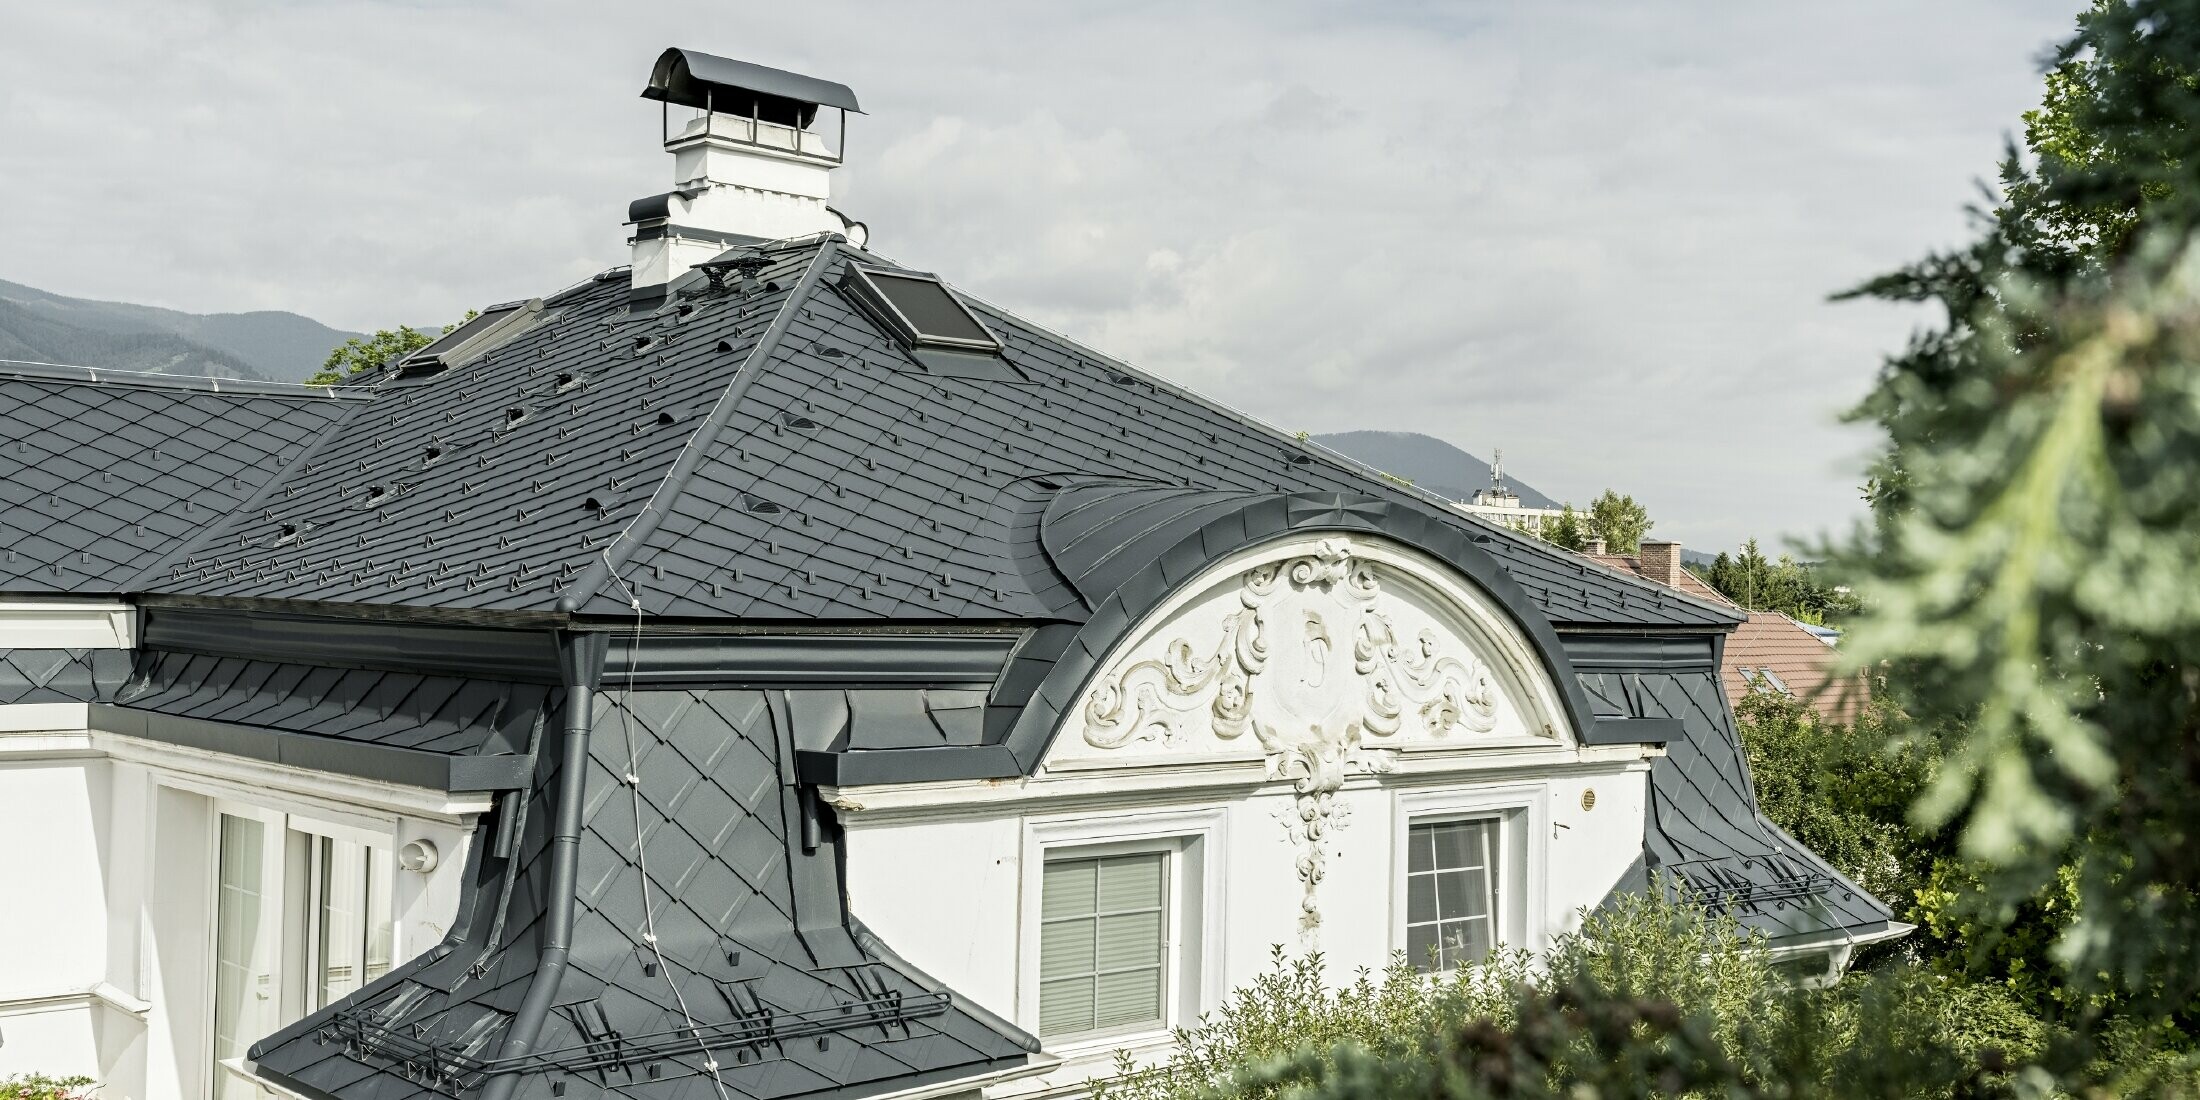 Pohled na střechu historické vily se střechou z falcované šablony 29 × 29 v barvě P.10 antracitové